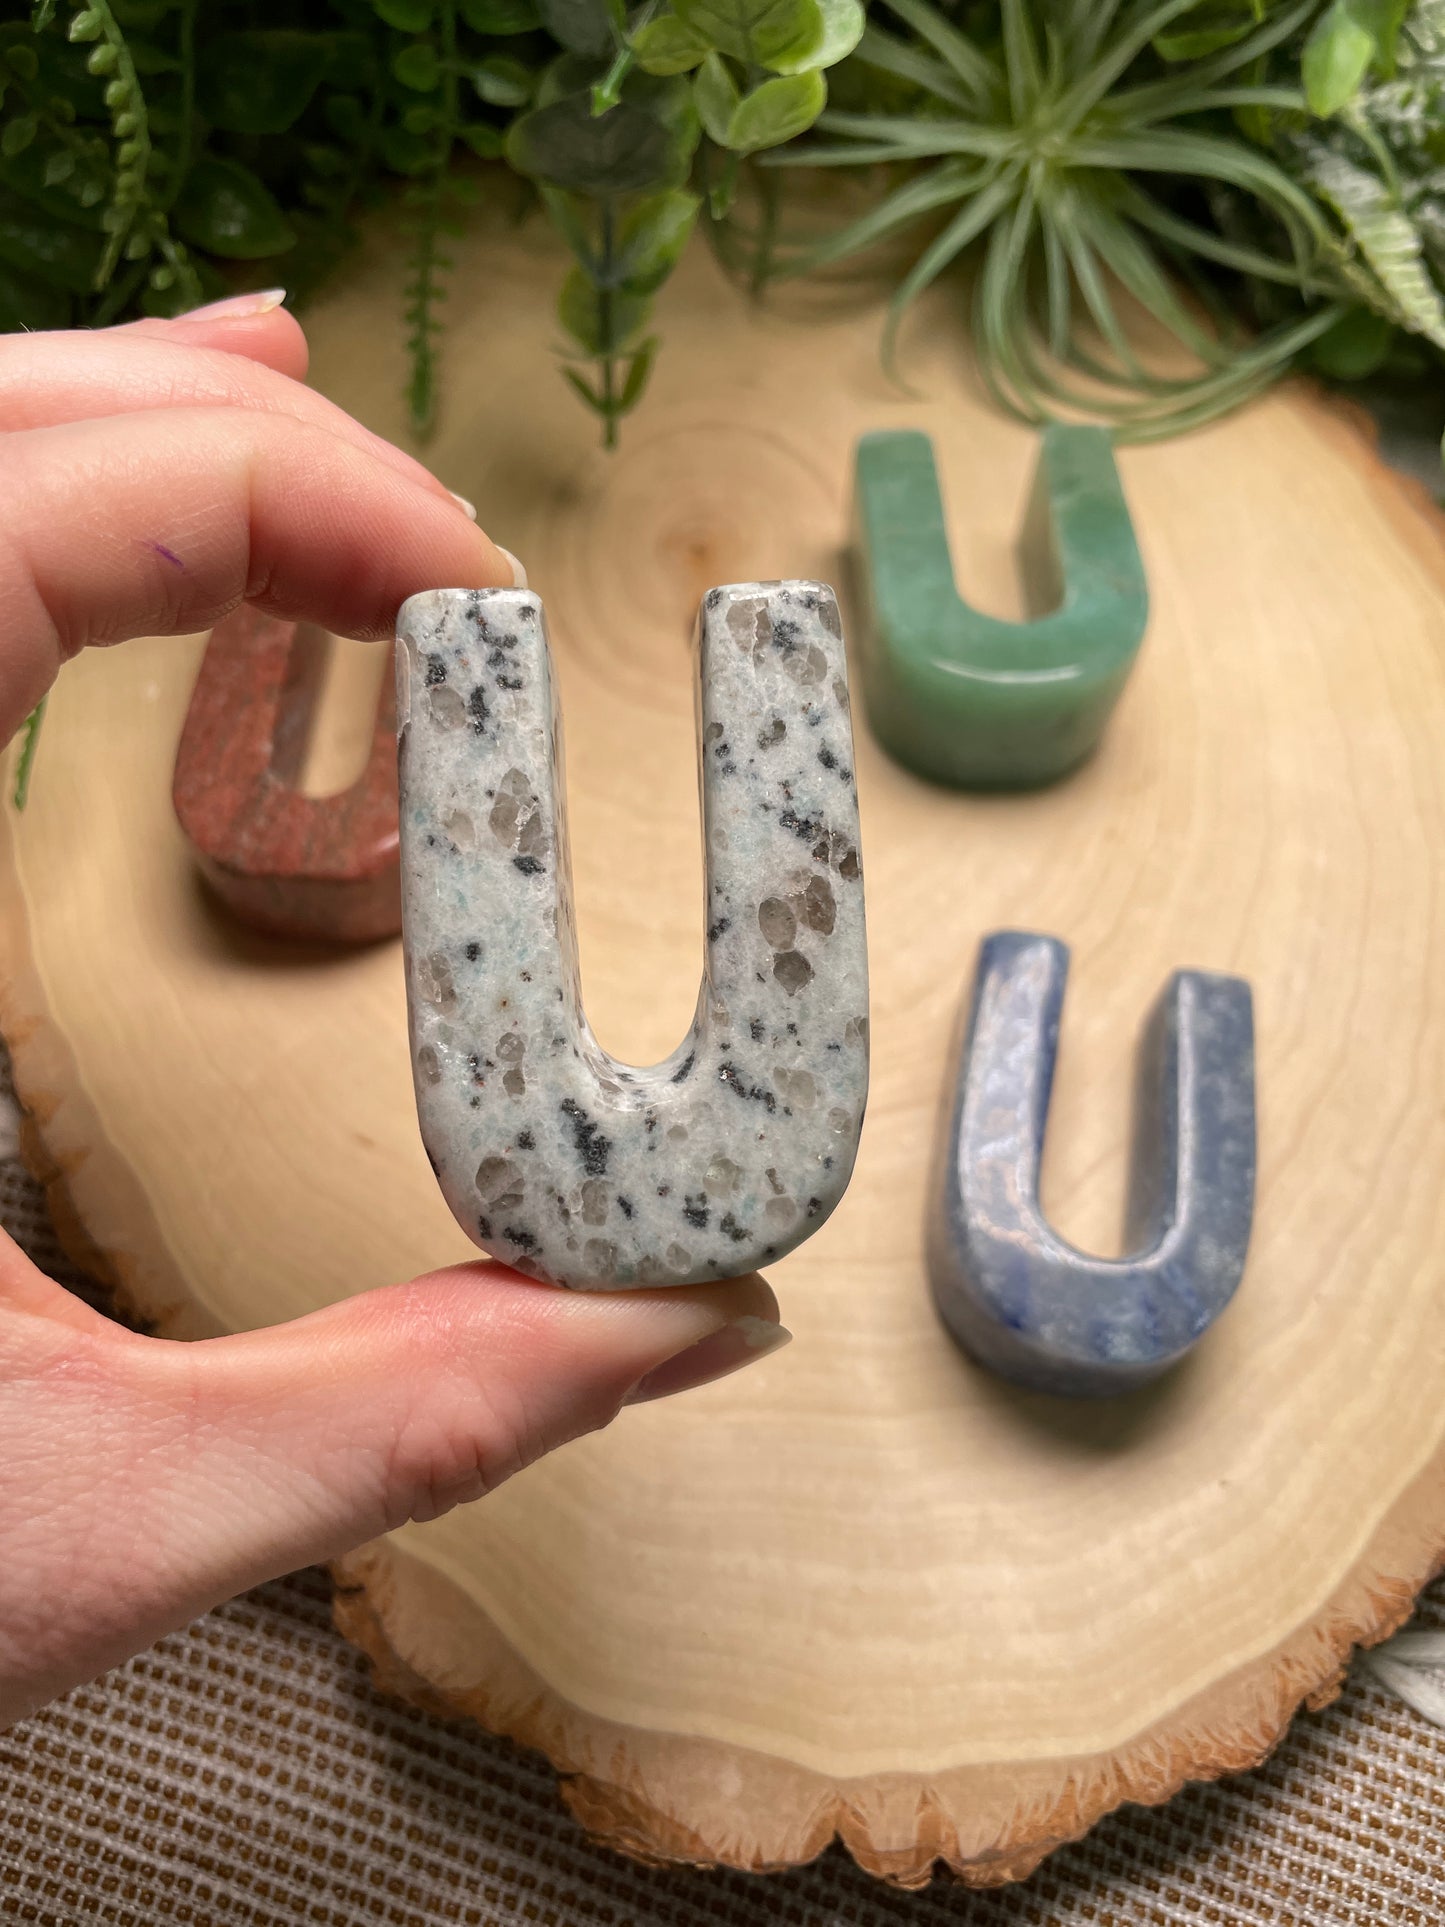 Crystal Letter "U"